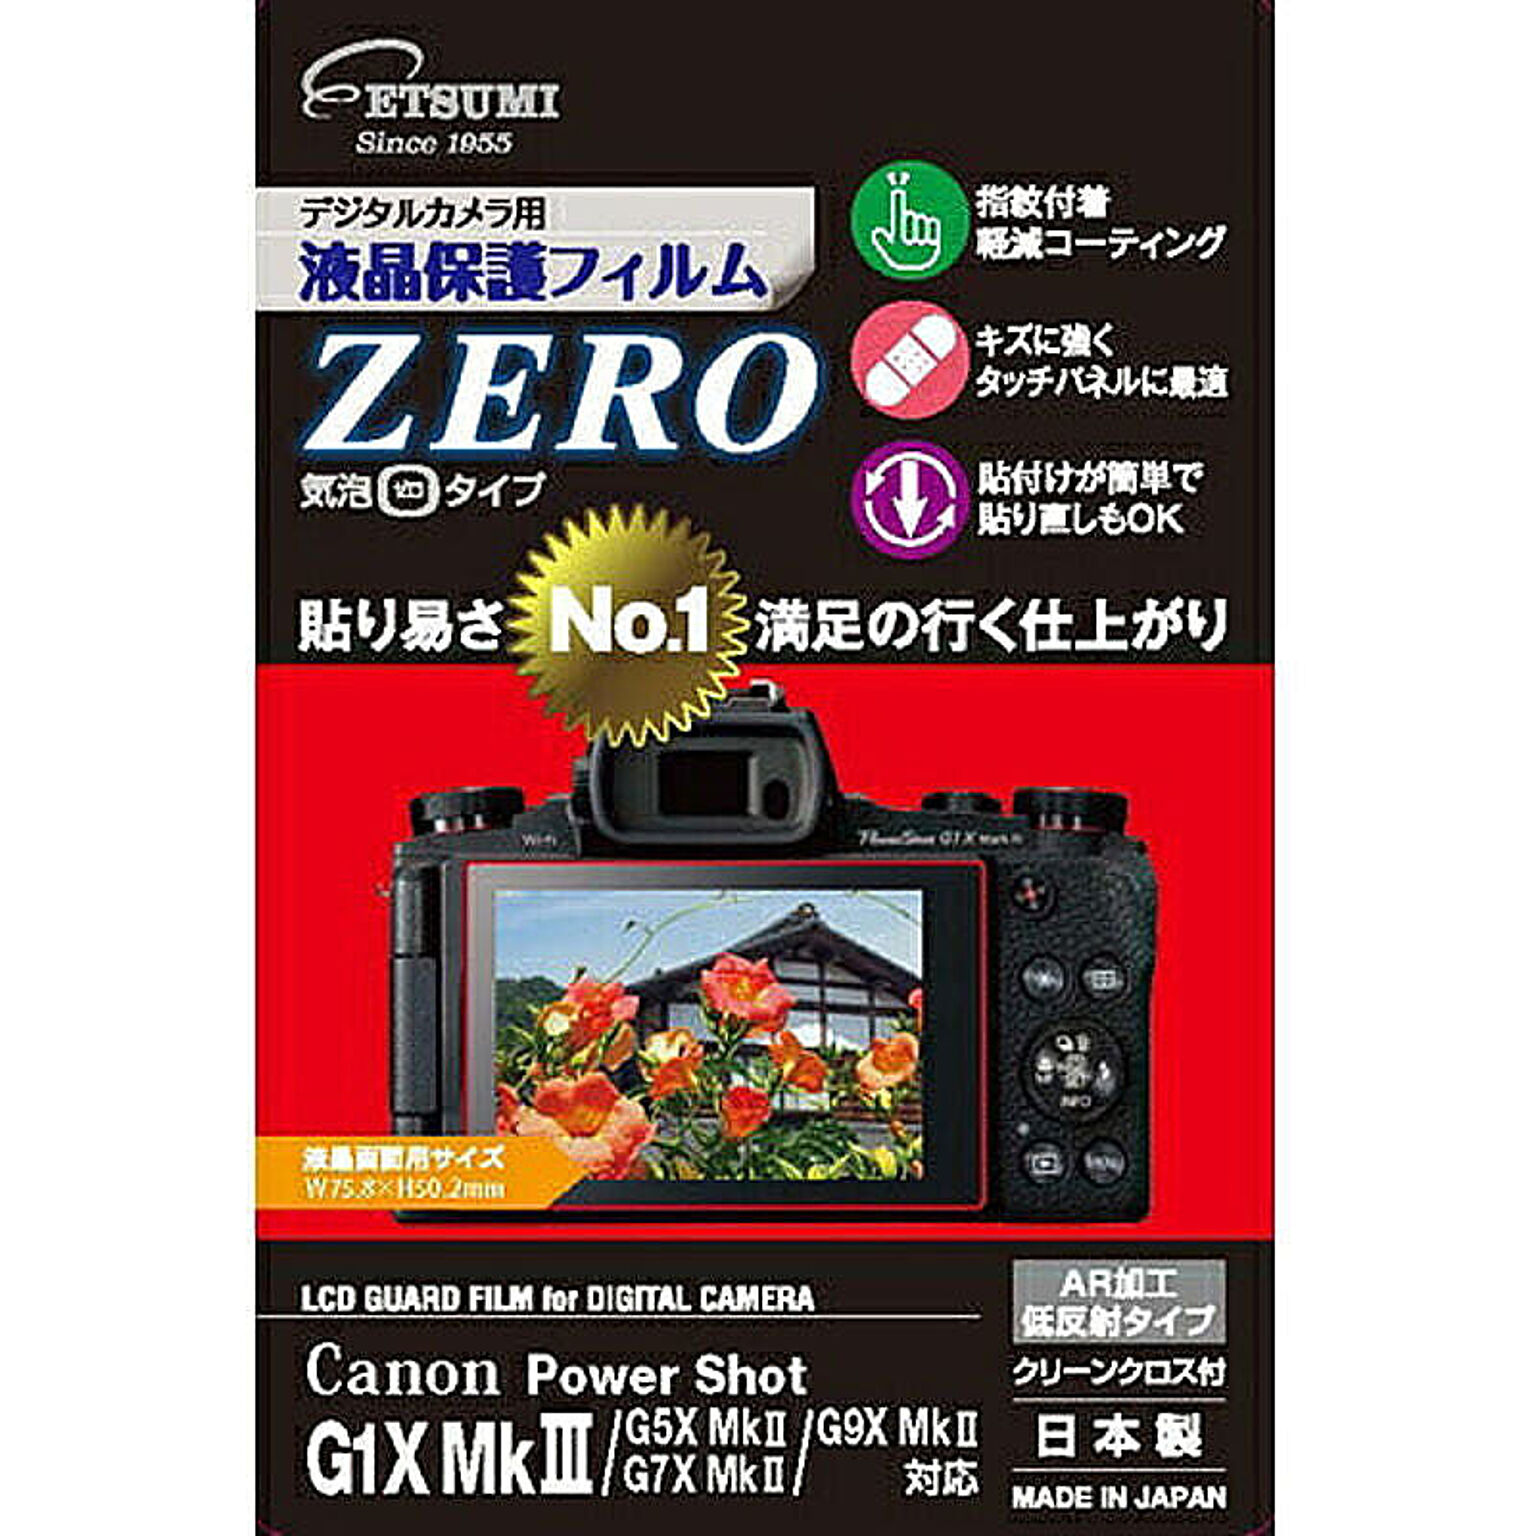 エツミ デジタルカメラ用液晶保護フィルムZERO Canon G1XMk/G5XMk/G7XMk/G9XMk対応 VE-7385 管理No. 4975981461095